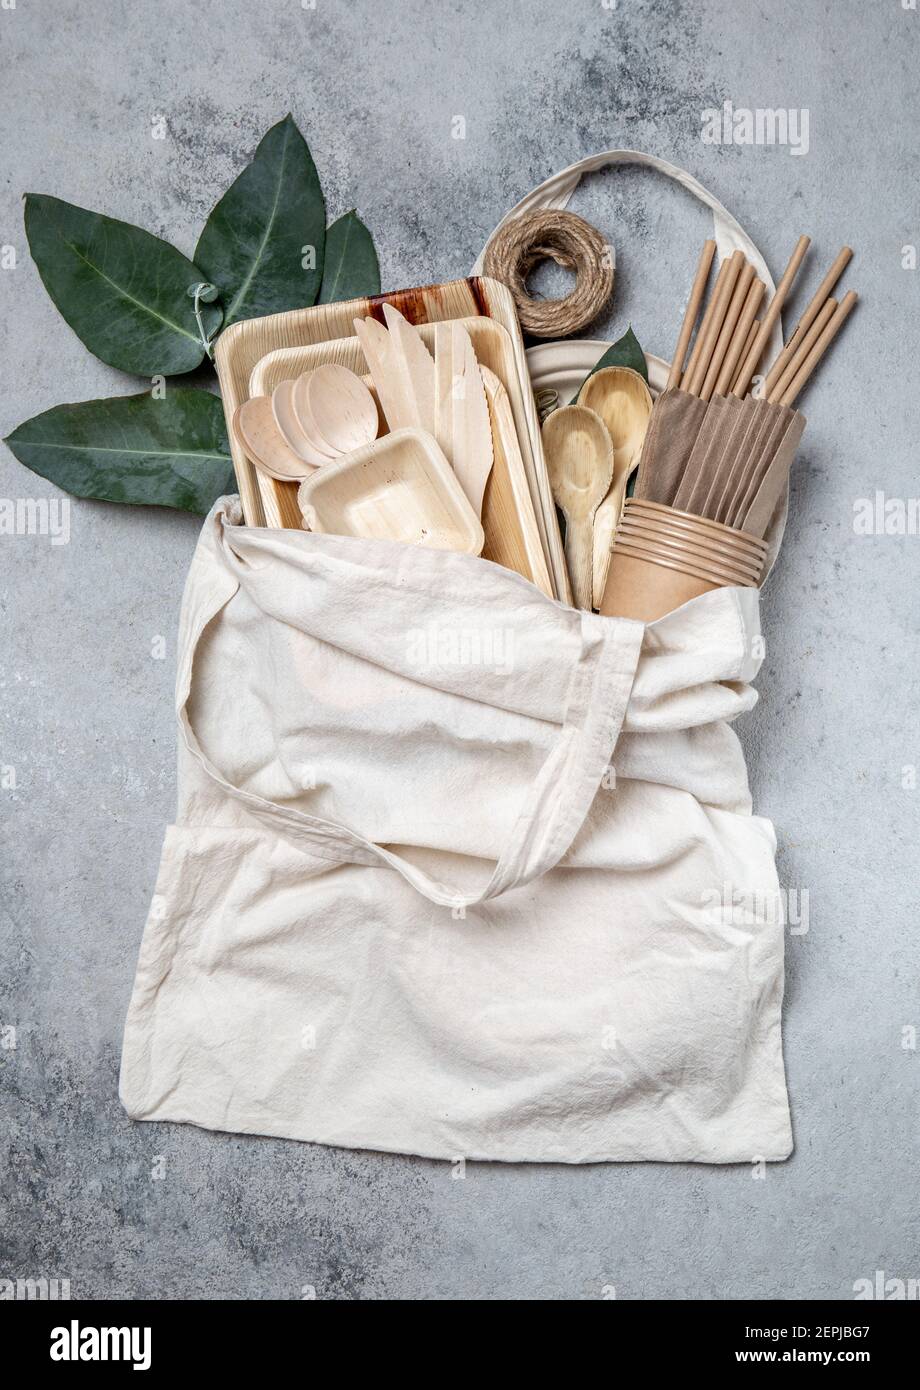 Vaisselle en papier et bois éco-artisanale. Gobelets en papier, vaisselle, sac, assiettes et couverts en bois dans un sac en lin. Recyclage ou concept écologique Banque D'Images